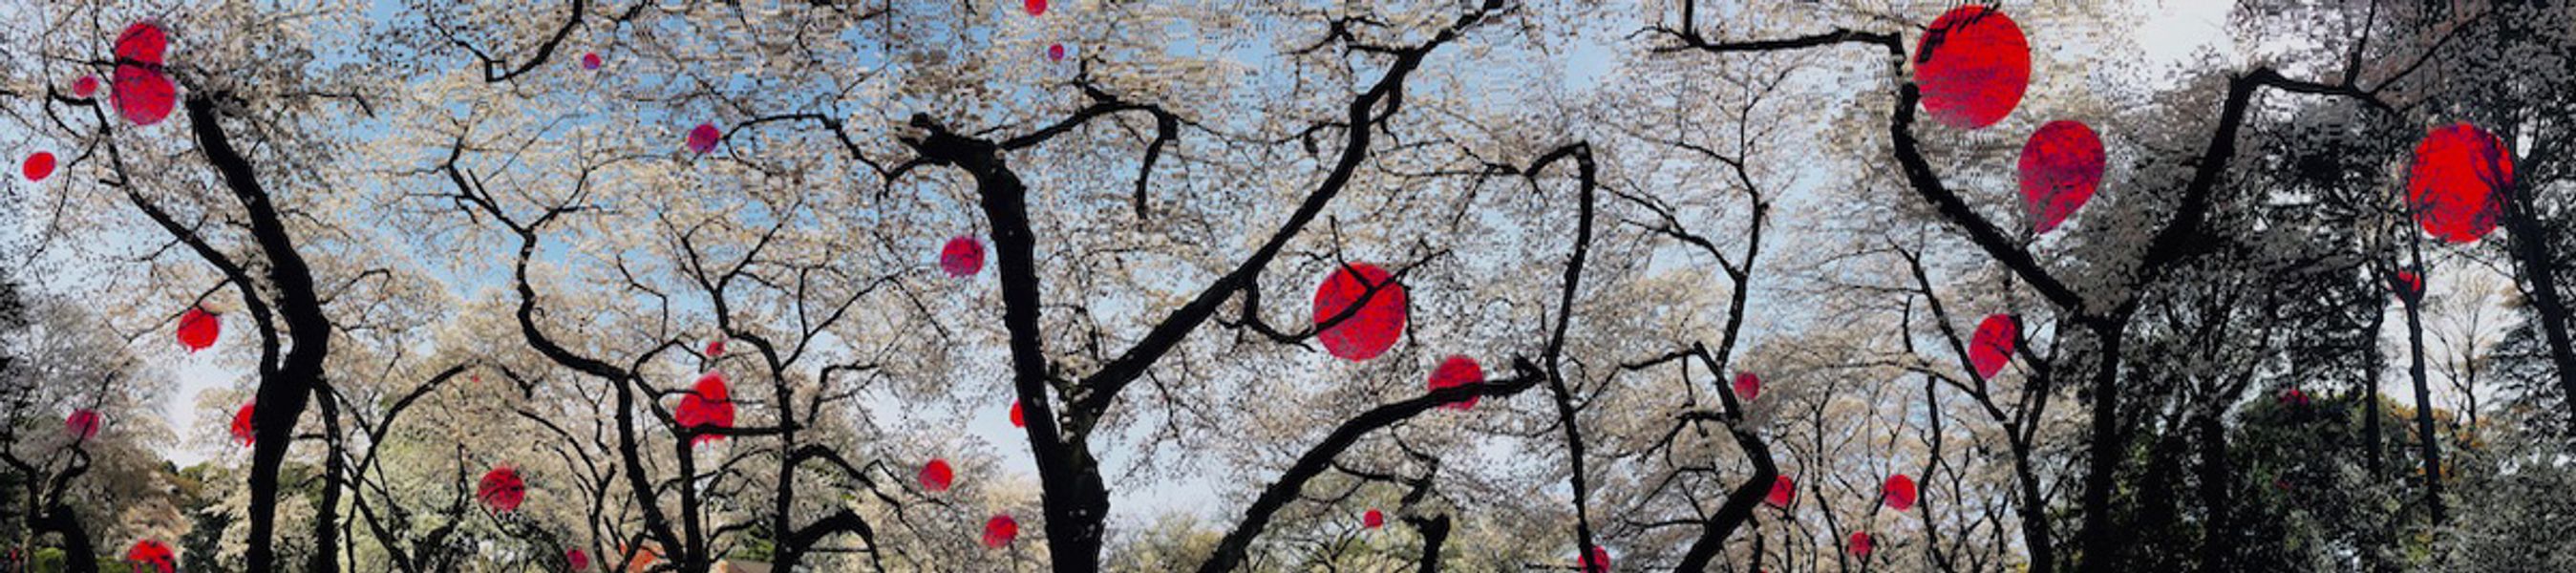 Delia Dickmann abstrakte Fotografie panorama weiß Kirschblüten  Bäume  und rote Kreise